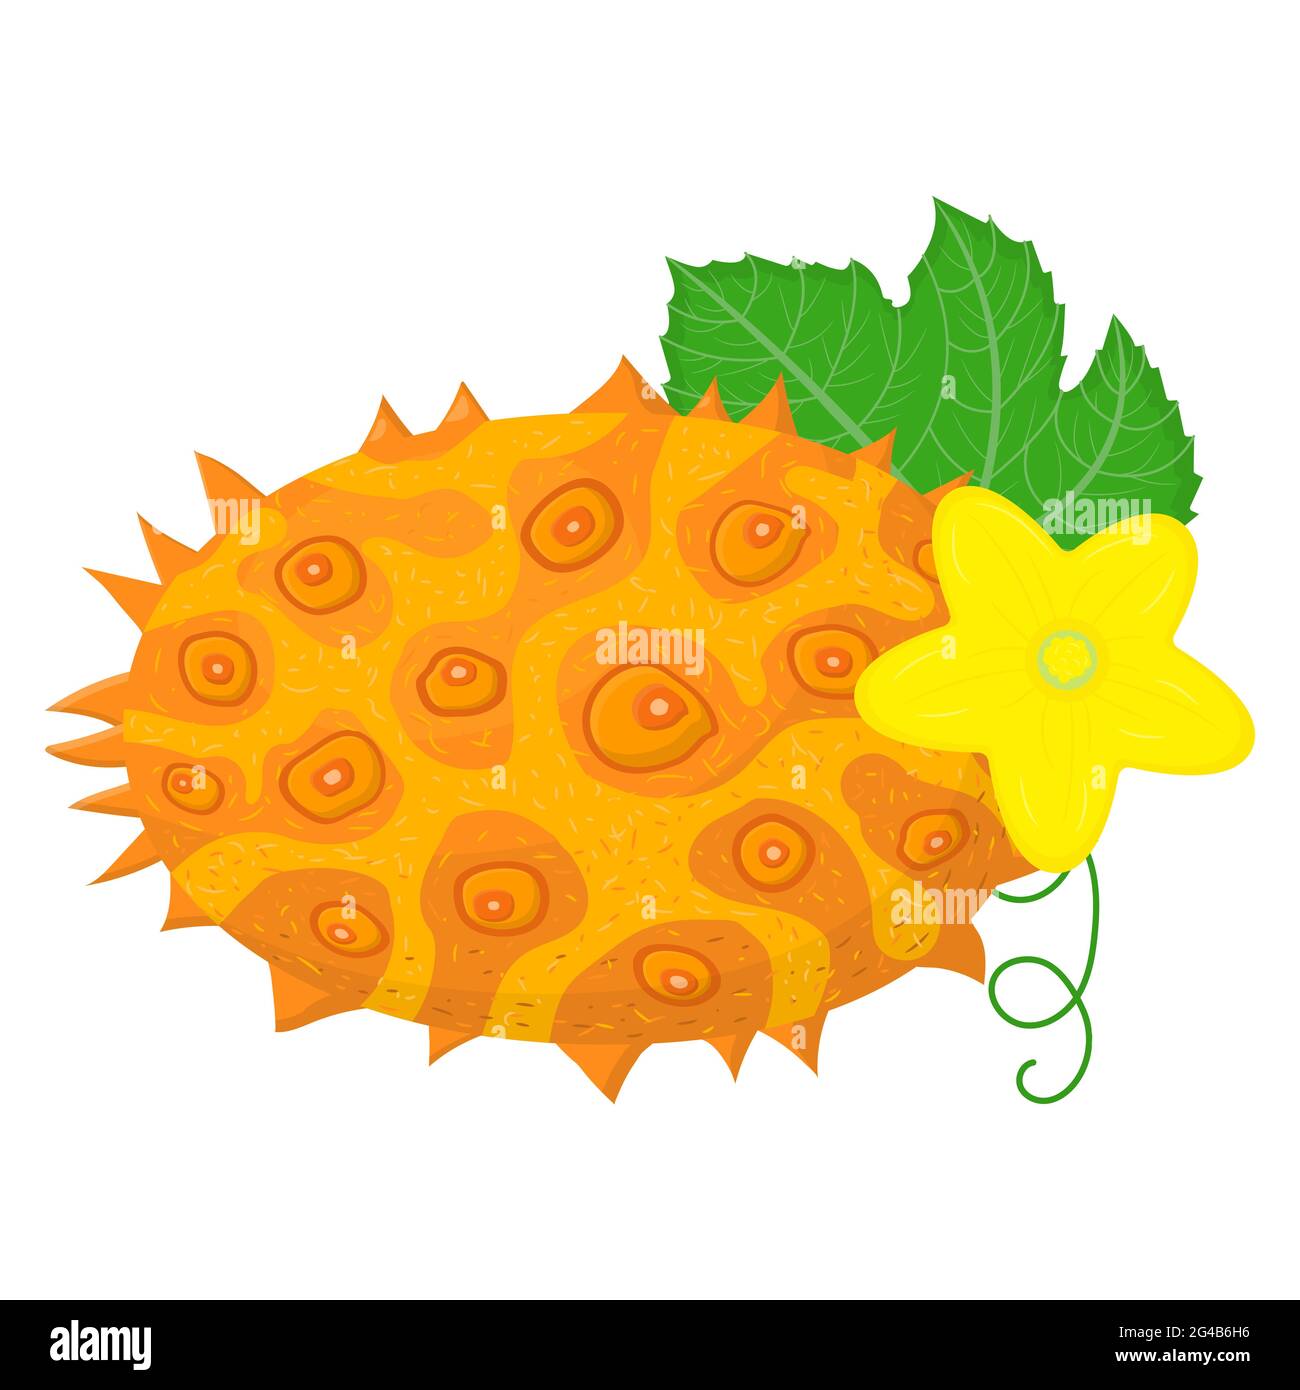 Frutto fresco intero giallo kiwano con foglie e fiori isolati su sfondo bianco. Frutti estivi per uno stile di vita sano. Frutta biologica. Stile cartone animato. Illustrazione Vettoriale